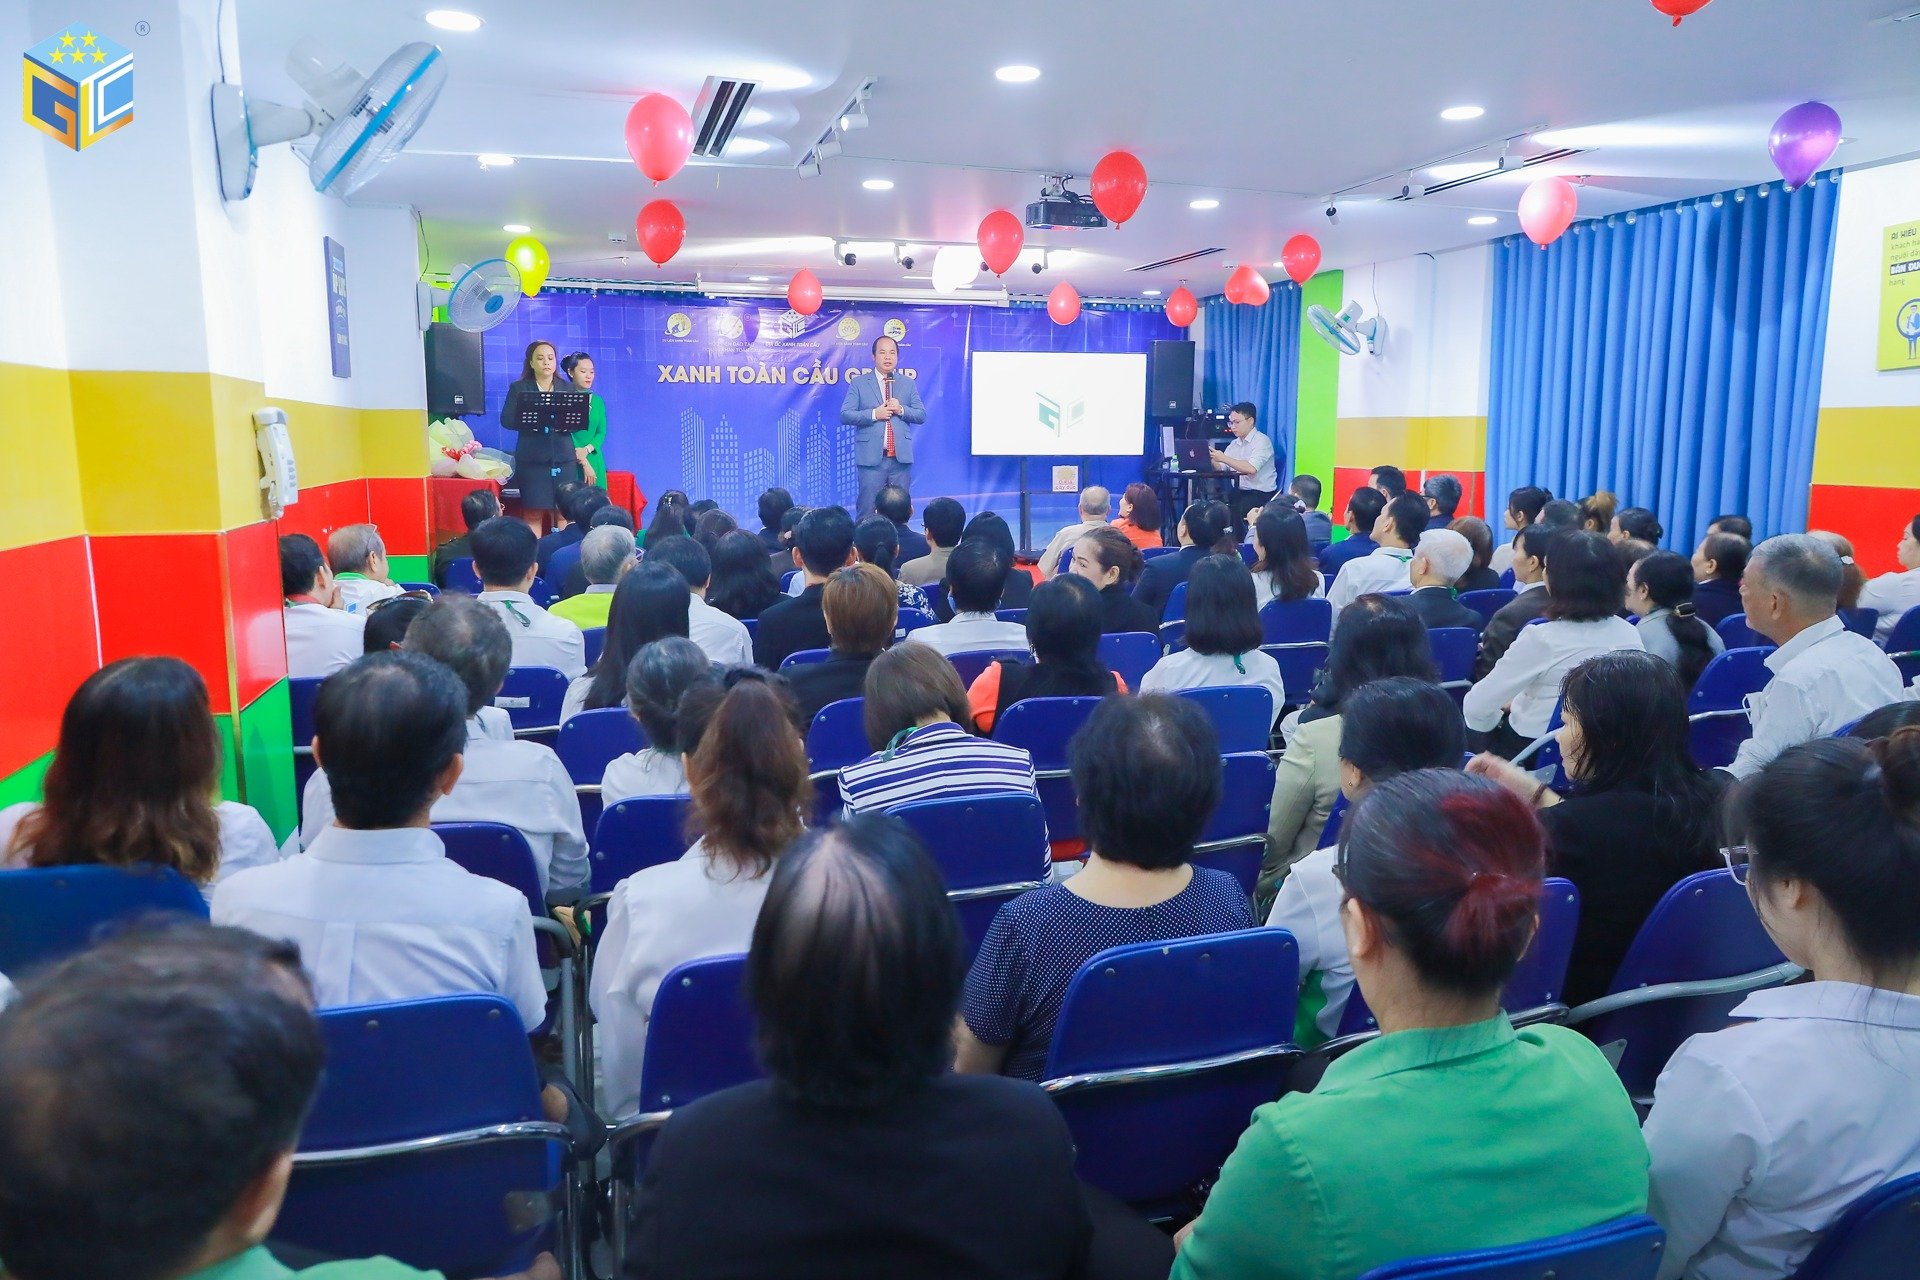 Ông  Ông Nguyễn Thanh Ngà – CT HĐQT Công ty địa ốc Xanh Toàn Cầu trong một buổi đào  tạo và chia sẻ chiến lược kinh doanh cho toàn thể nhân viên Cty